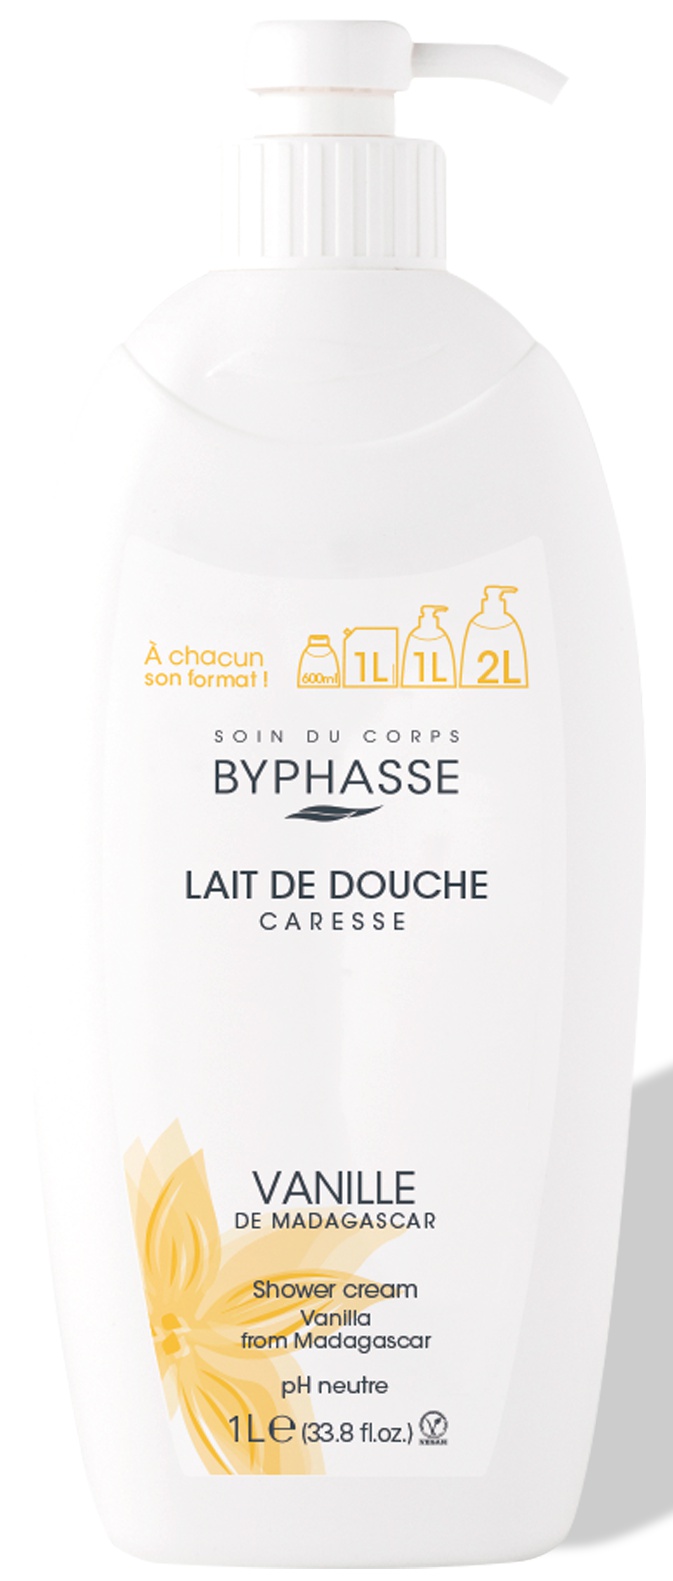 Byphasse Caresse Shower Cream Vanilla